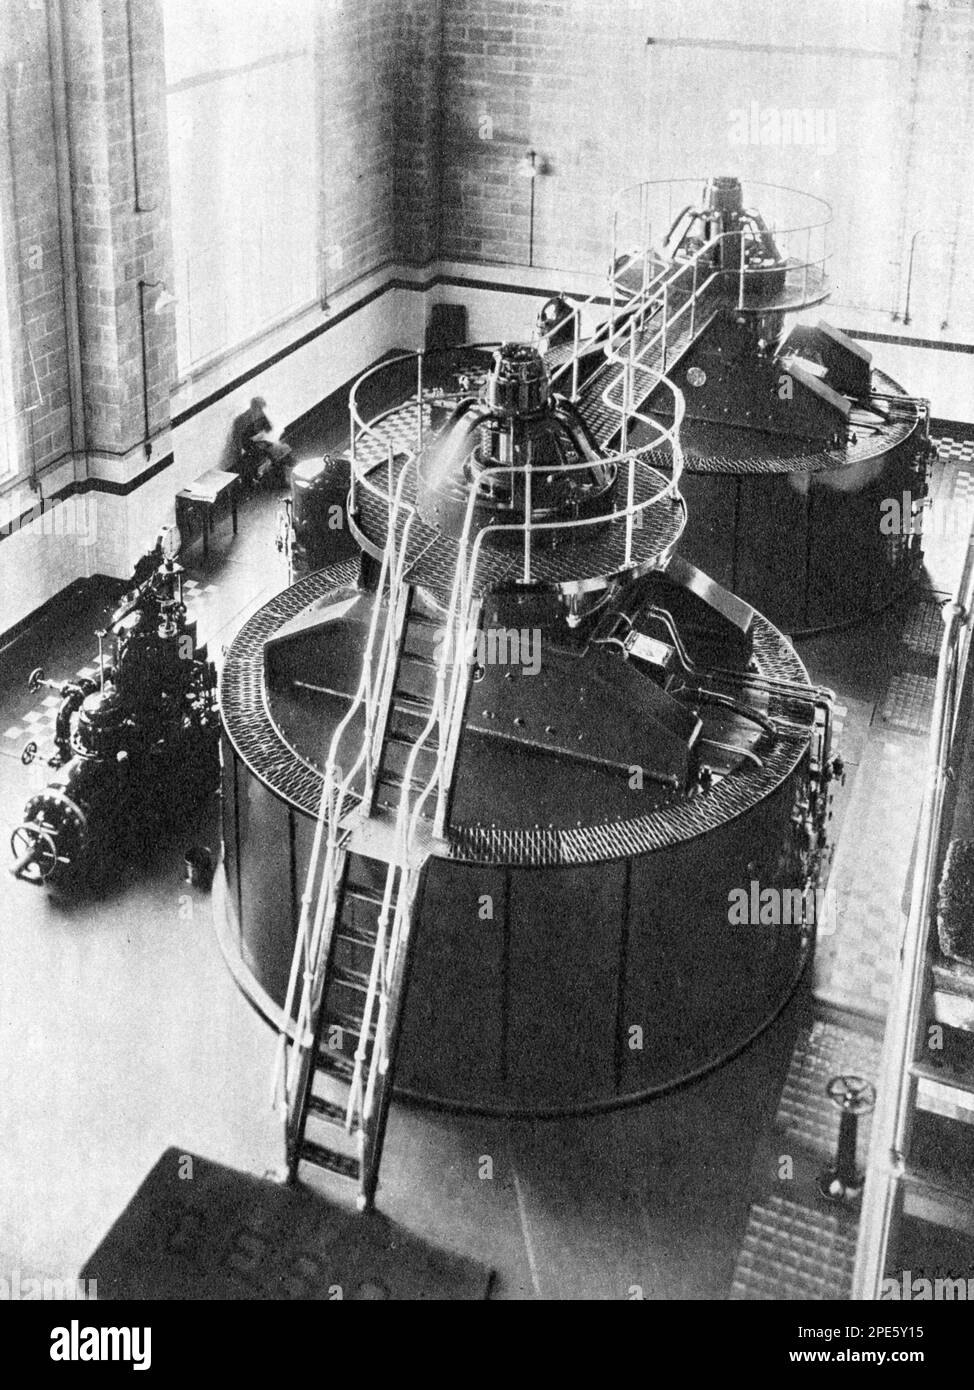 Deux alternateurs à roue d'eau à la centrale d'alimentation de Rannoch, c1933. Le système d'énergie hydro-électrique de Tummel est un réseau interconnecté de barrages, de centrales électriques, d'aqueducs et de transmission d'énergie électrique dans les montagnes de Grampian en Écosse. Banque D'Images